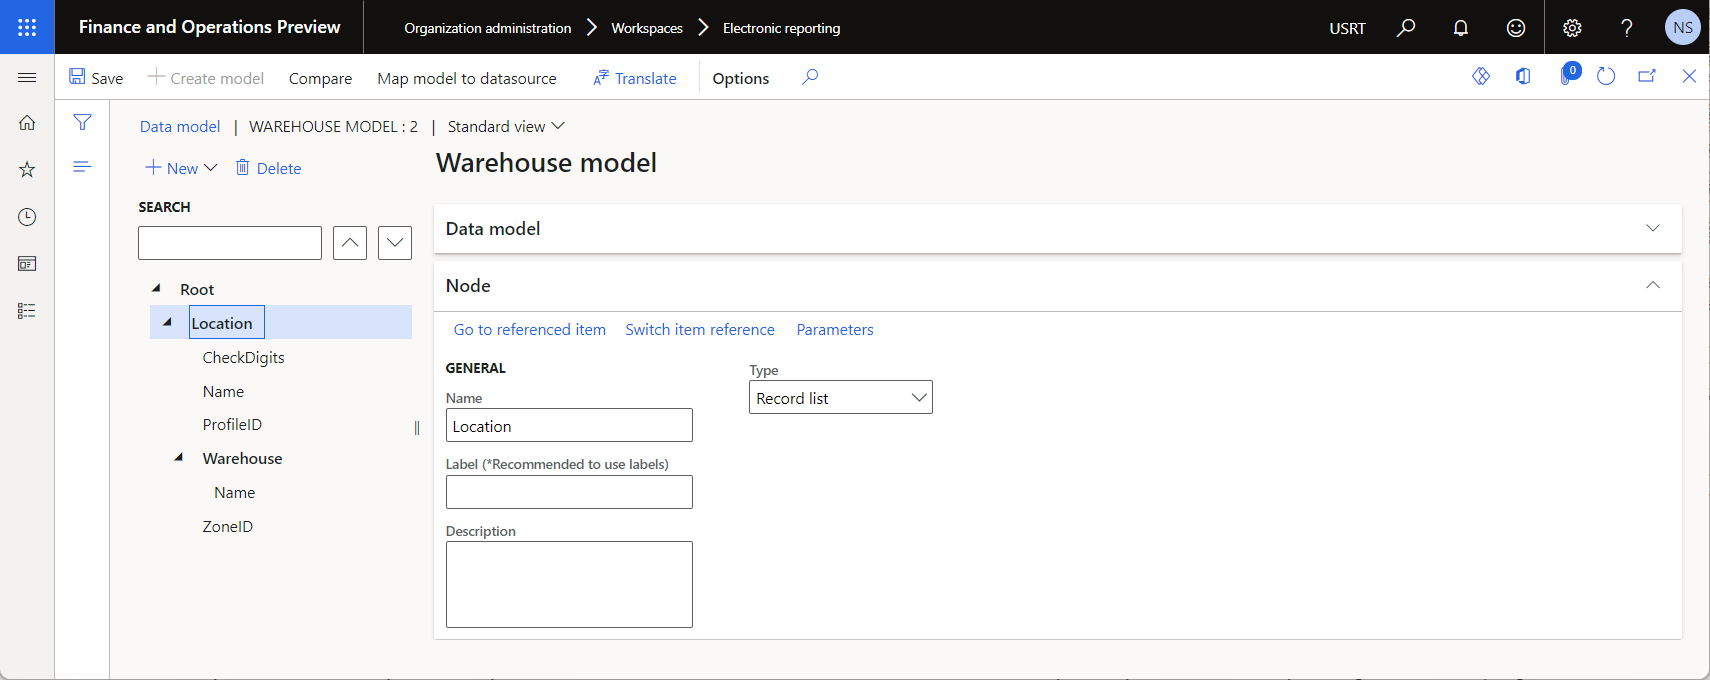 Estrutura do modelo de dados ER na página do estruturador de modelos de dados.